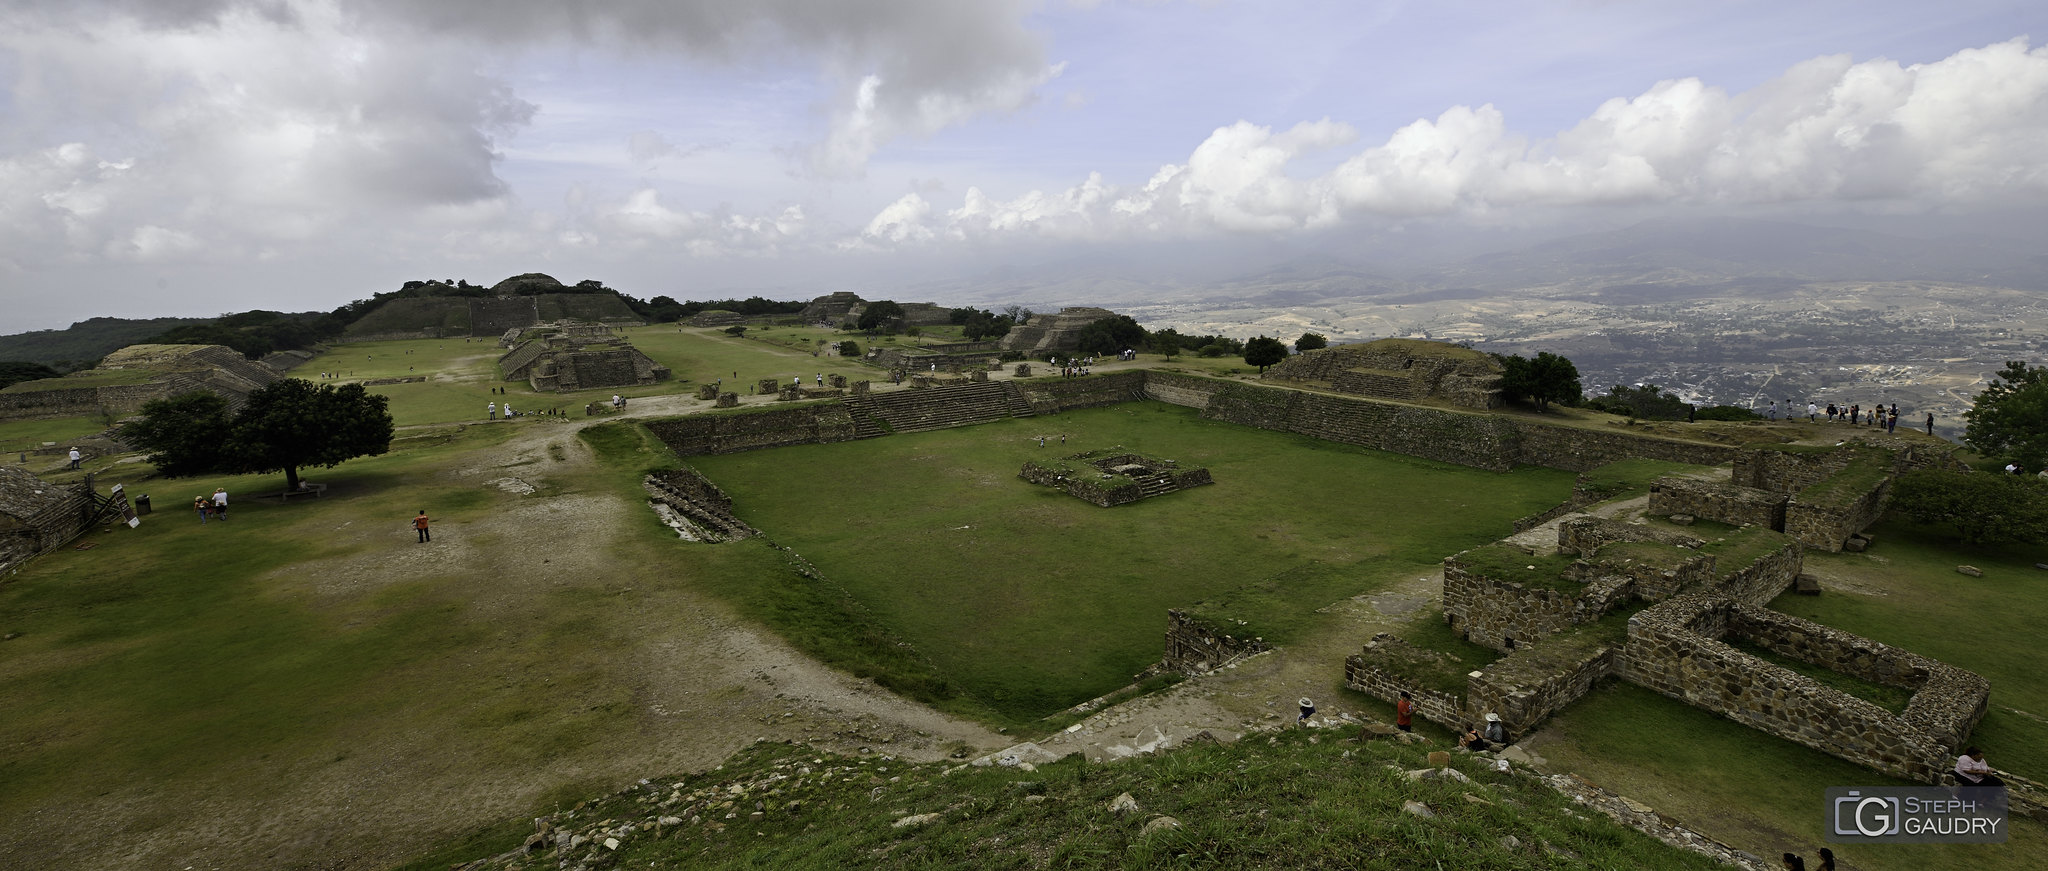 Zone archéologique de Monte Albán (MEX) [Cliquez pour lancer le diaporama]